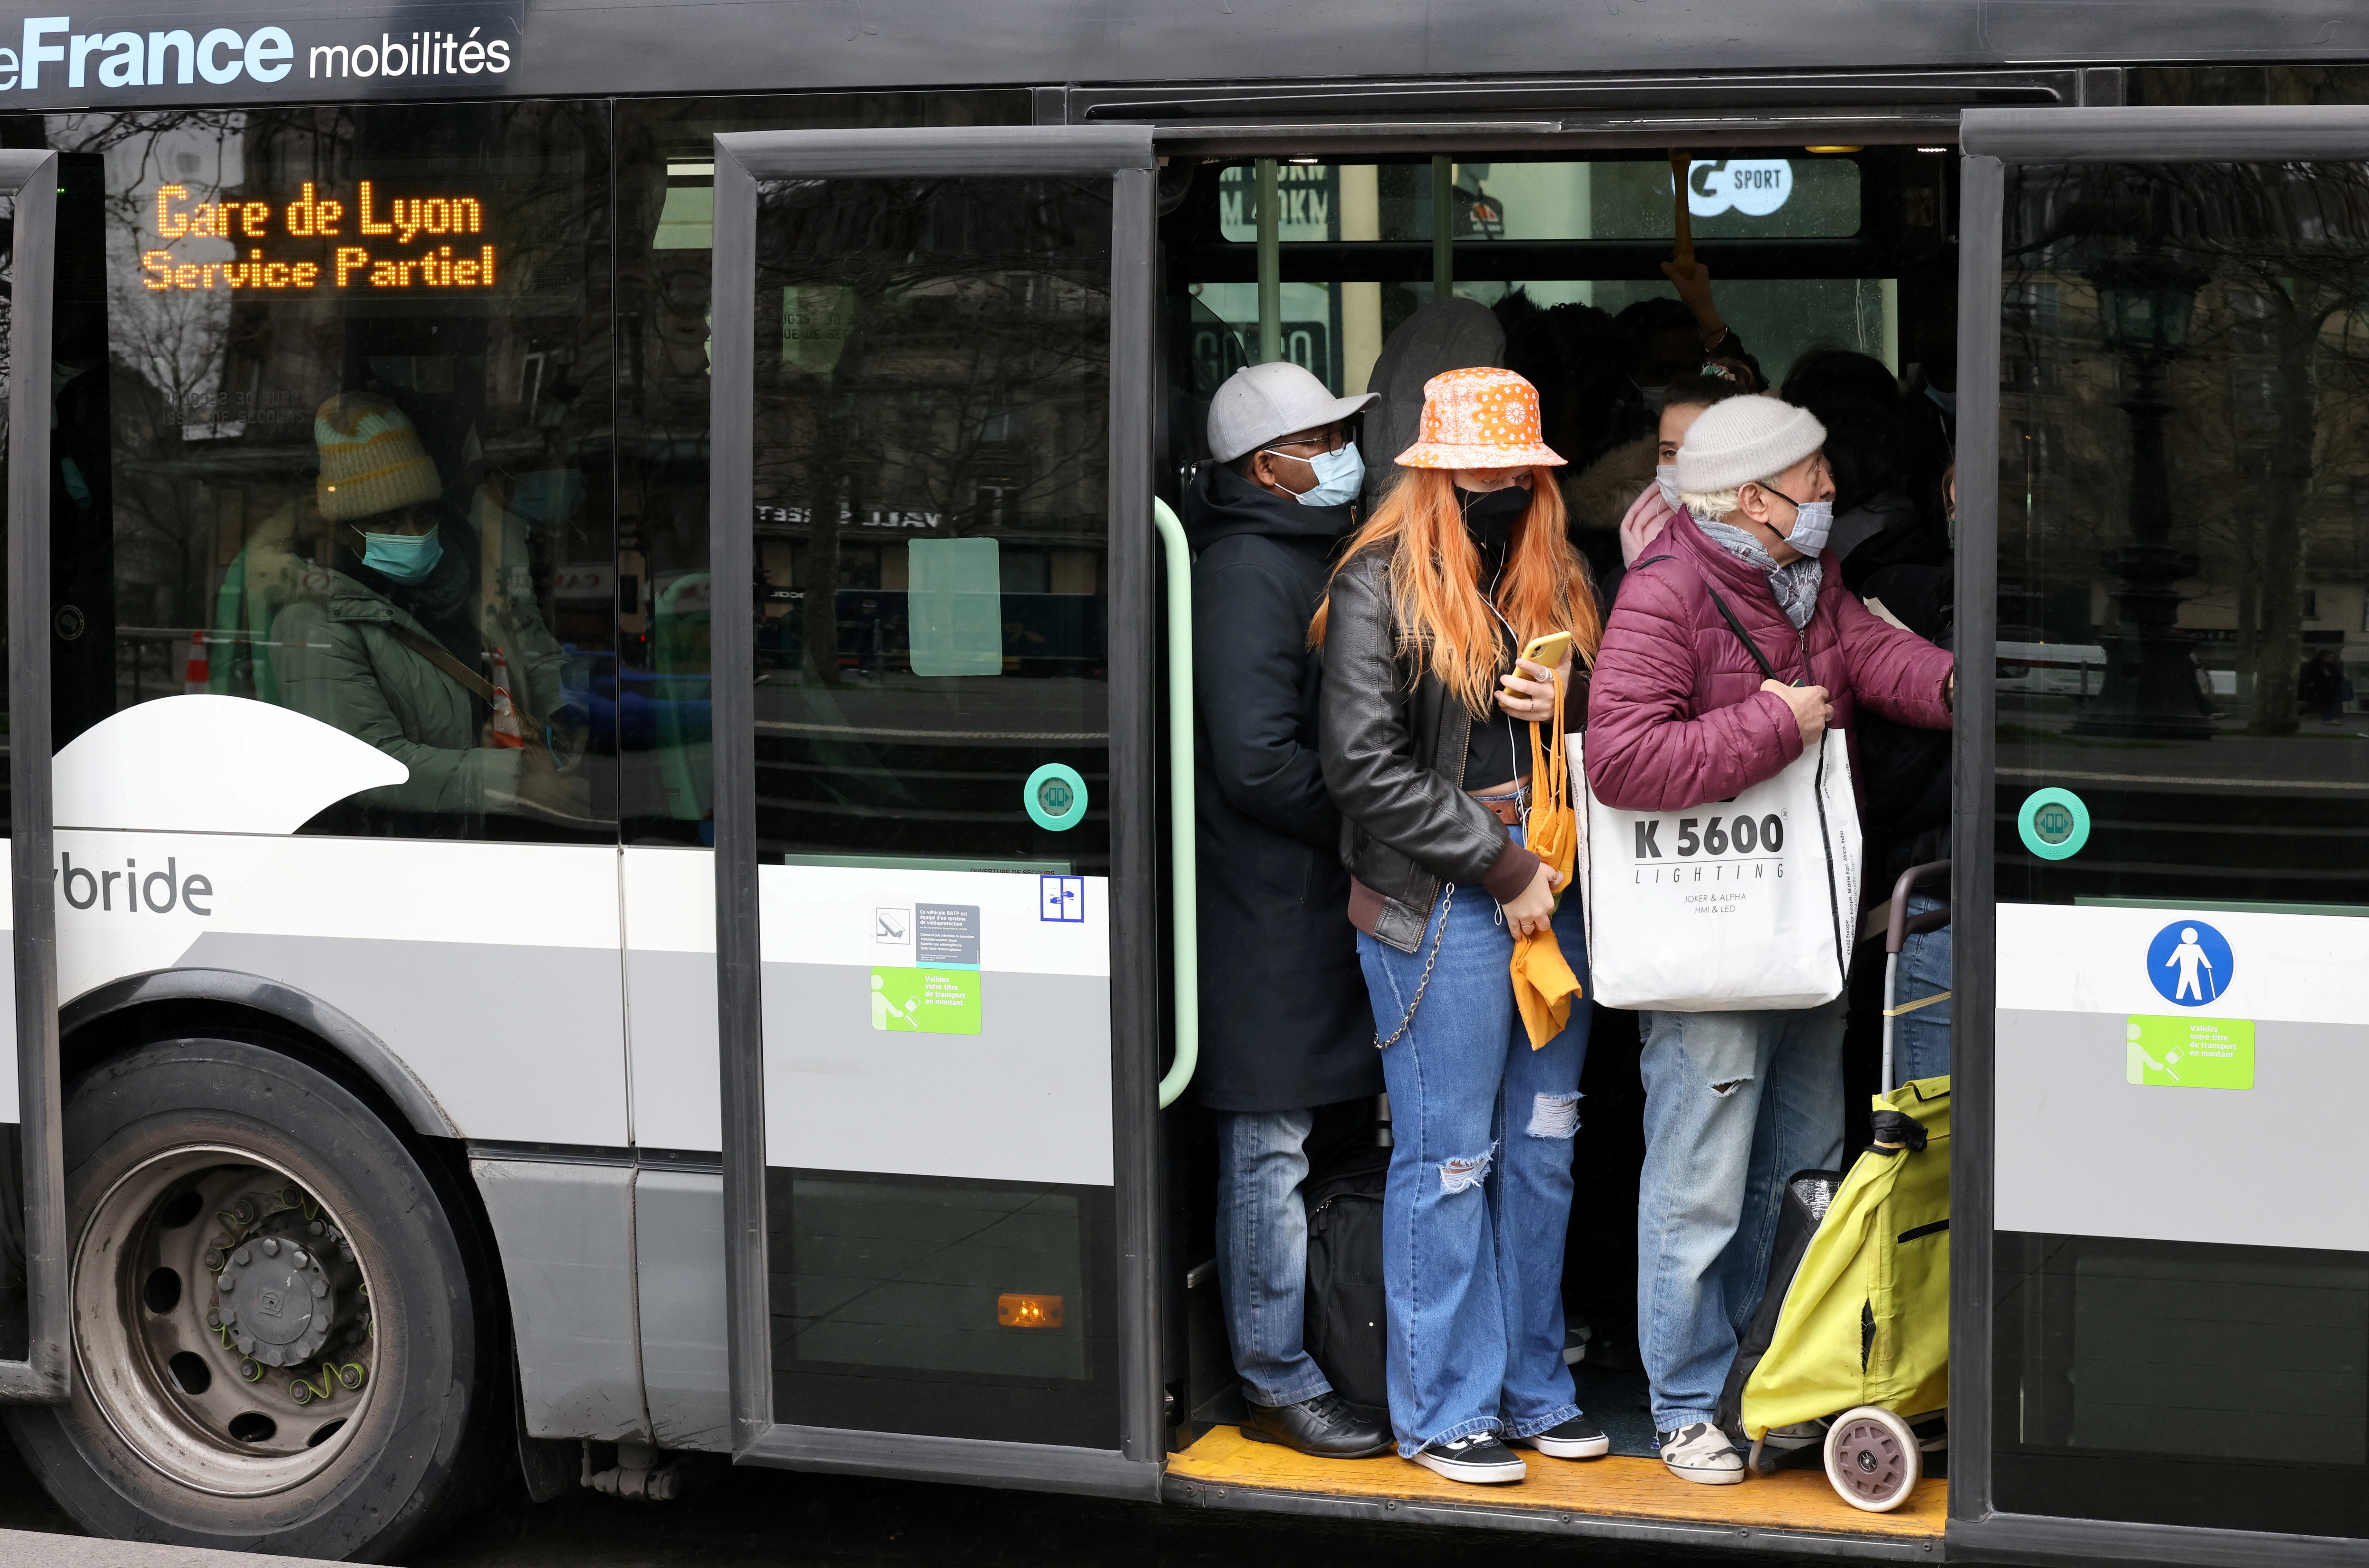 Rendre les transports gratuits profiterait au pouvoir d'achat et à la planète. Mais qu'en est-il réellement ? (Illustration) LP/Delphine Goldsztejn.